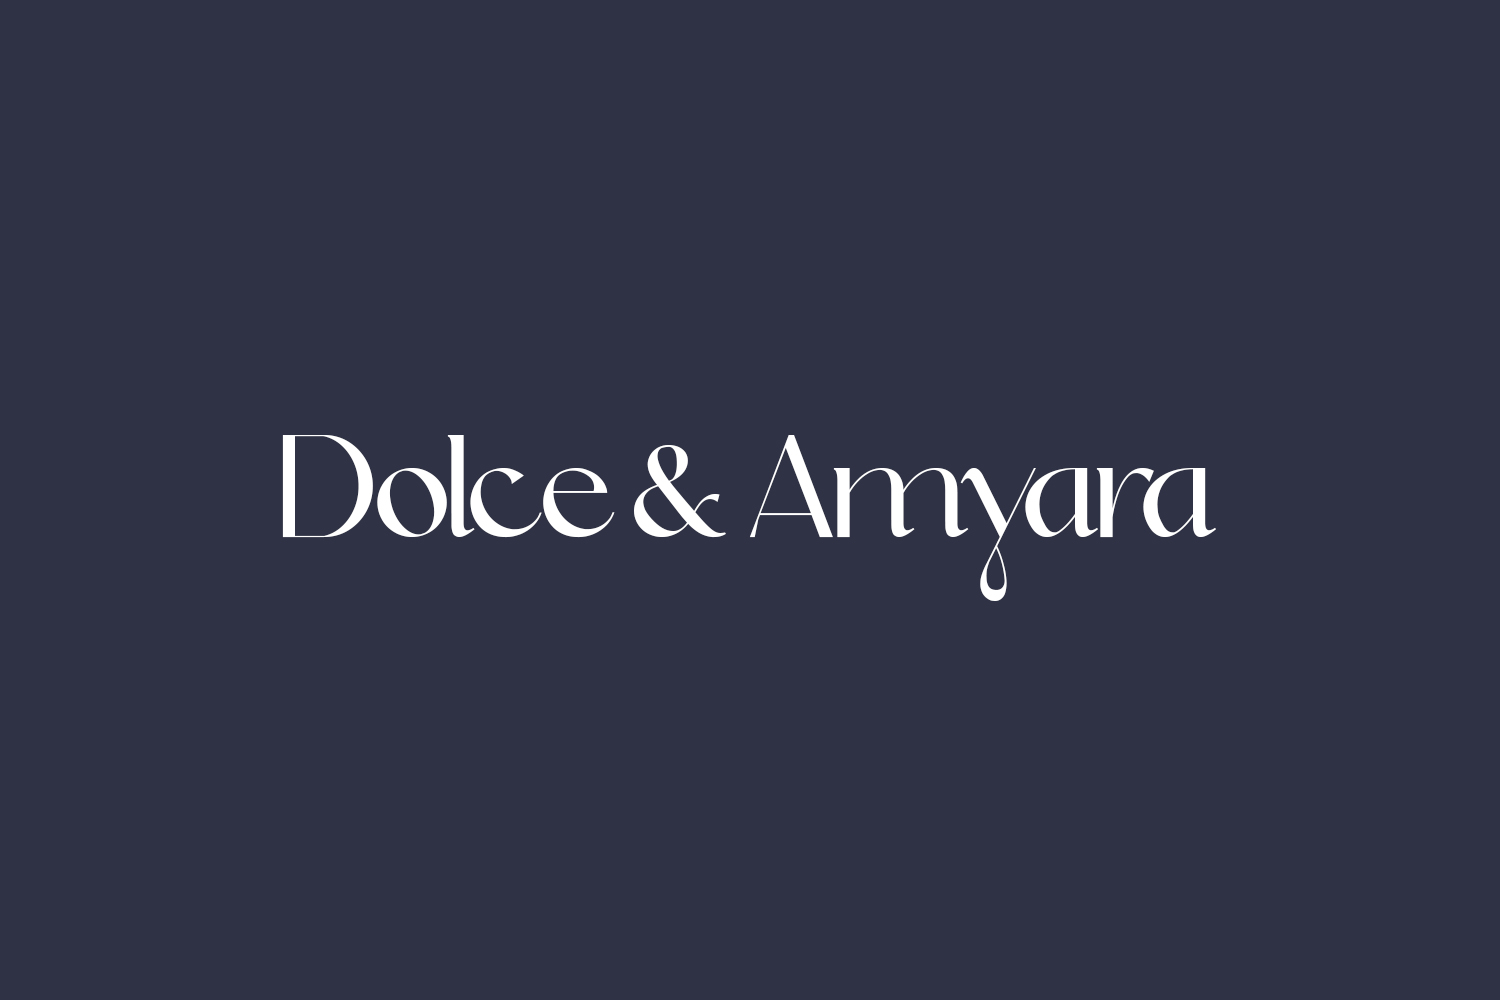 Dolce & Amyara Free Font